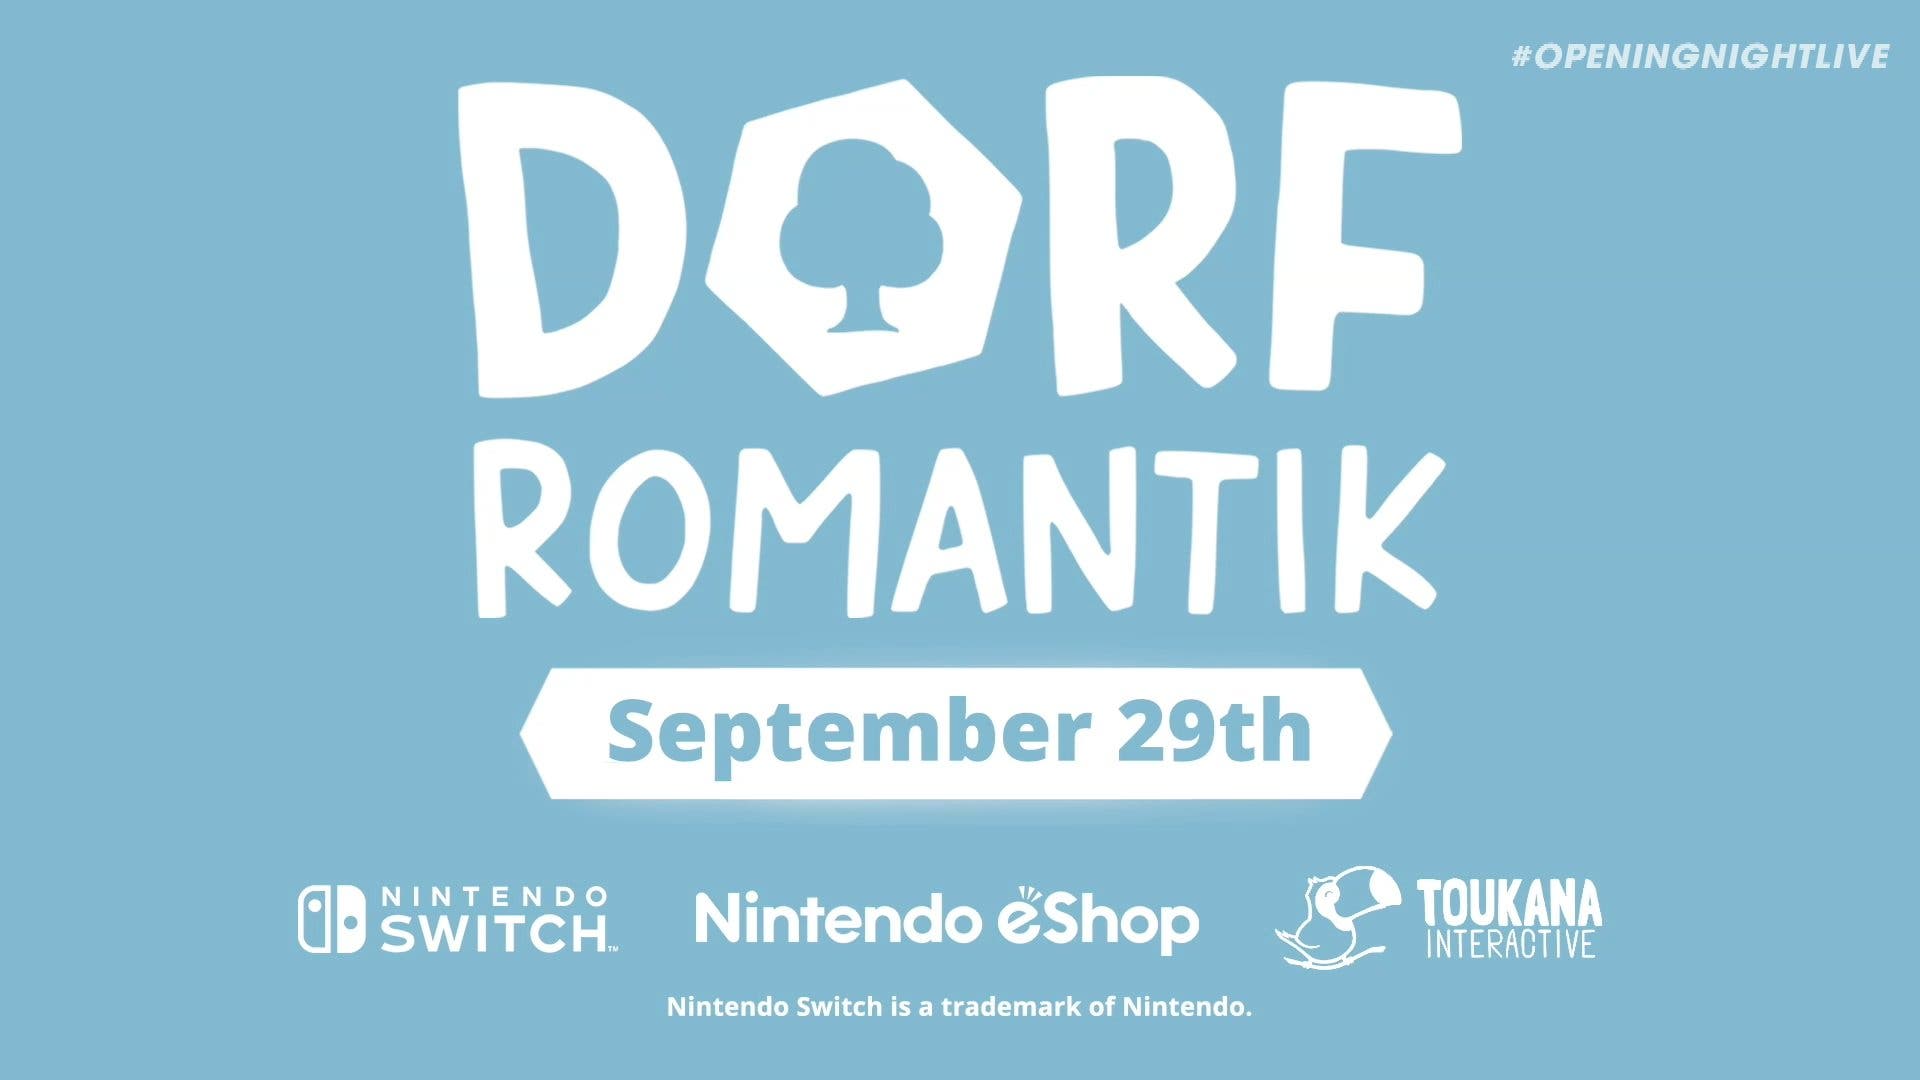 Dorfromantik ha sido anunciado para Nintendo Switch: disponible el 29 de septiembre